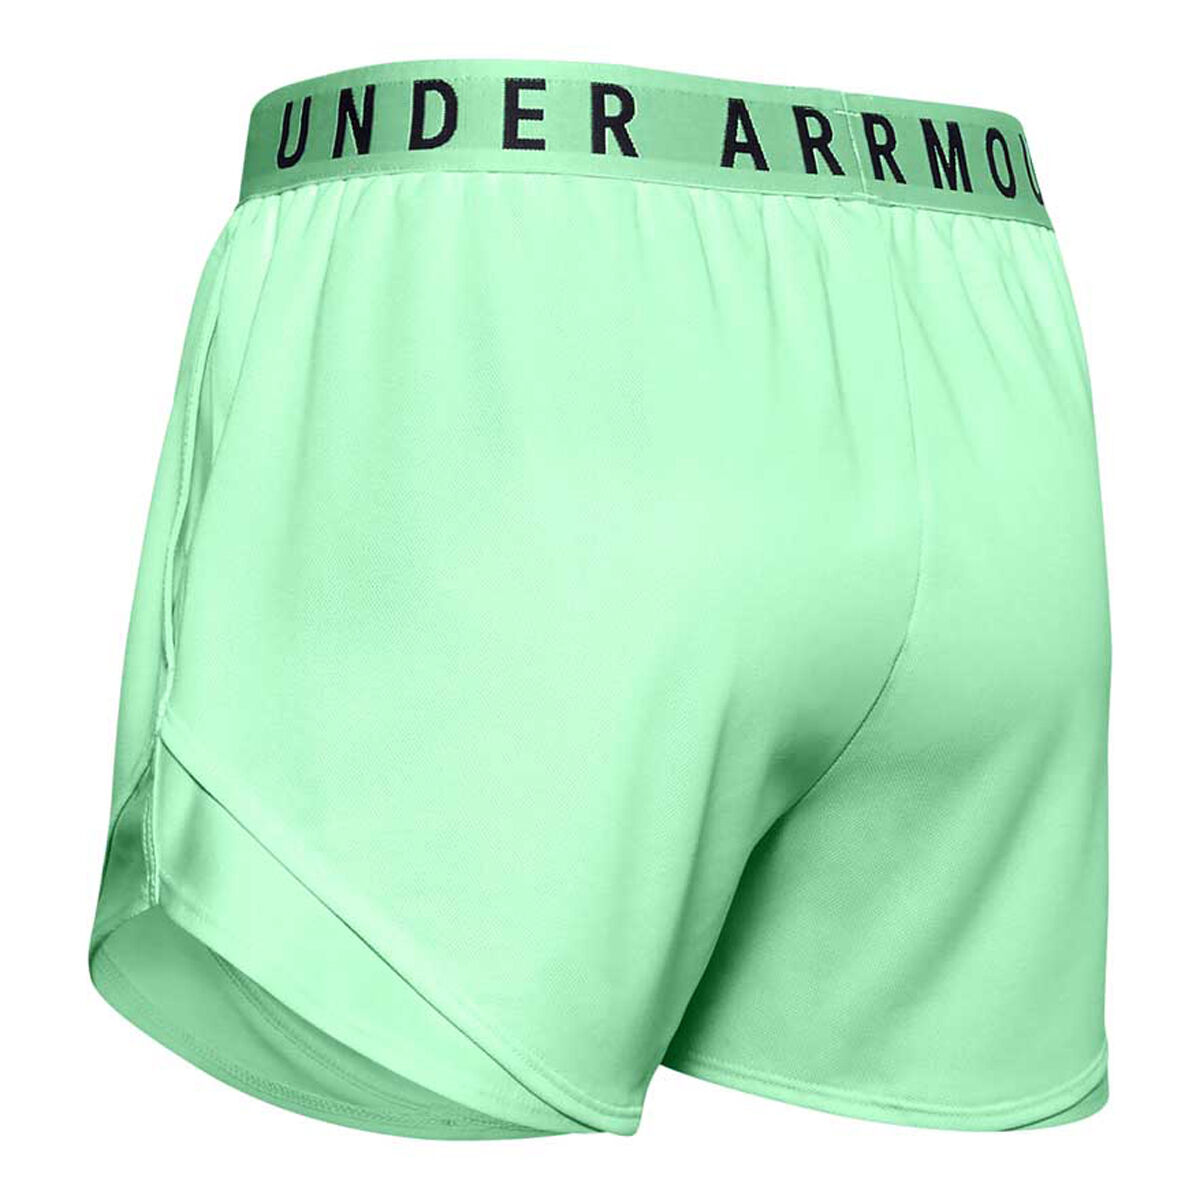 rebel sport under armour underwear